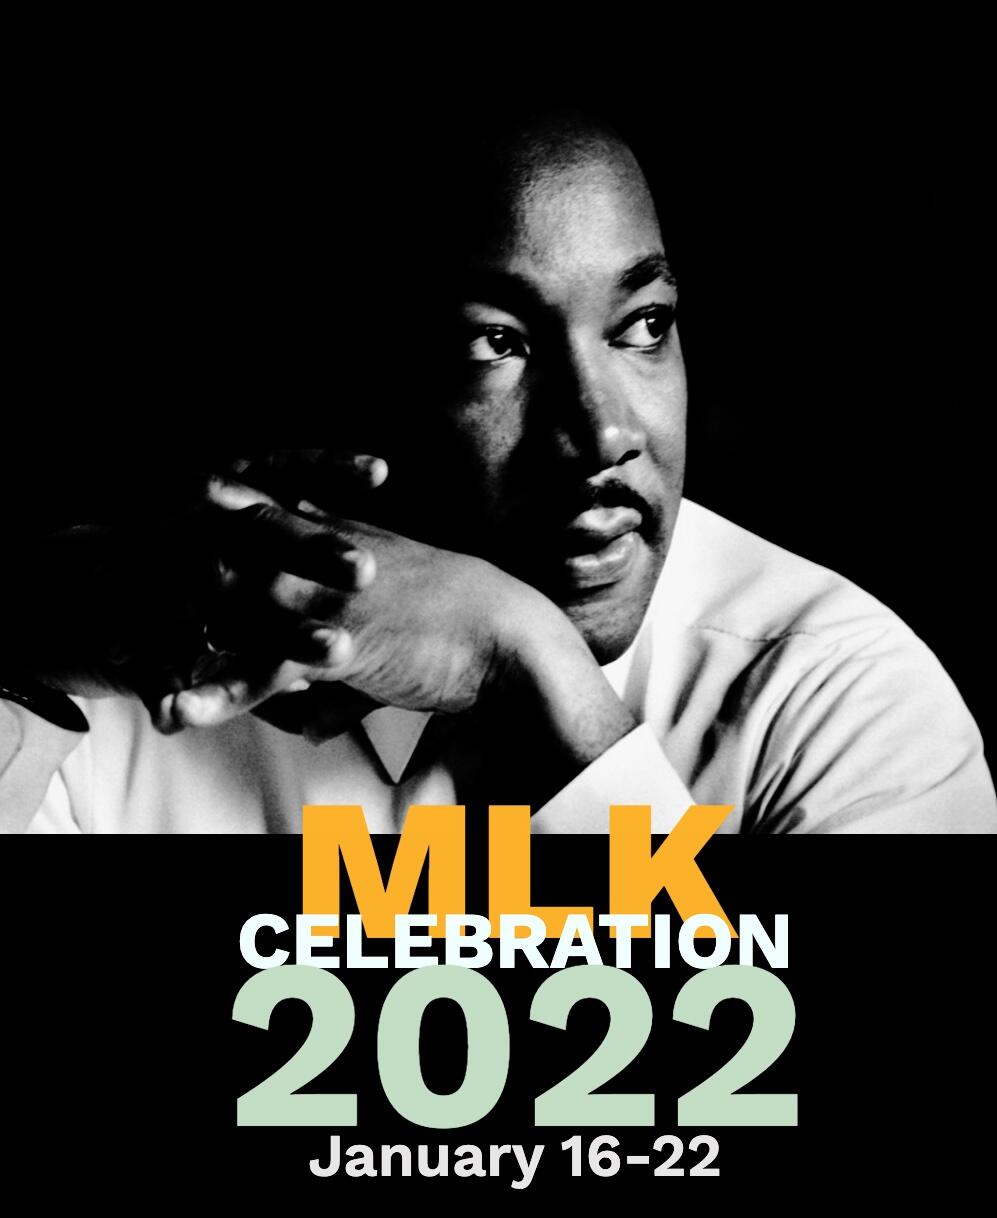 Martin Luther King Jr. Celebration 2022 poster